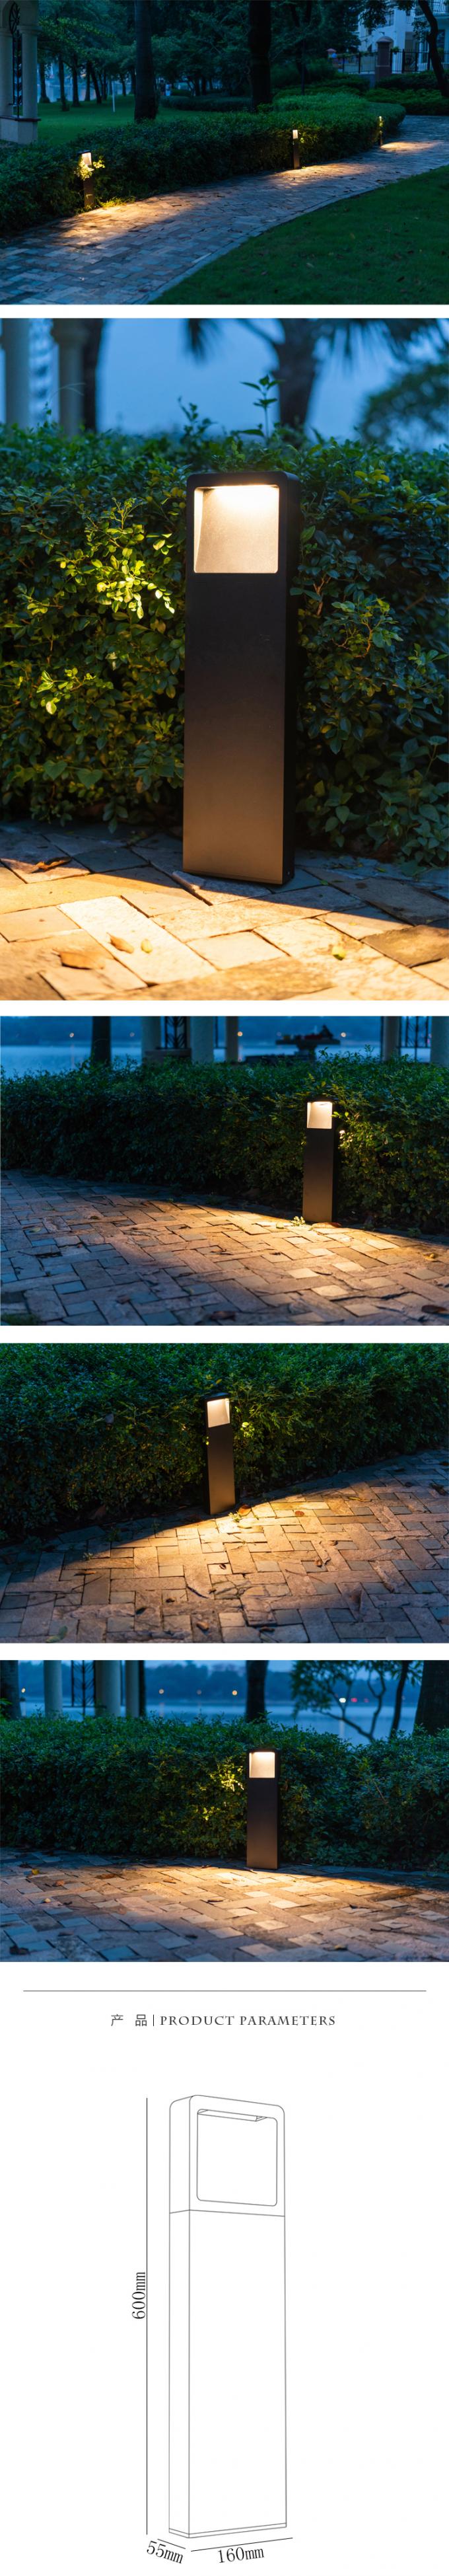 La nueva luz de la lámpara de la prenda impermeable LED del diseño y el bolardo del LED se encienden para la decoración del jardín